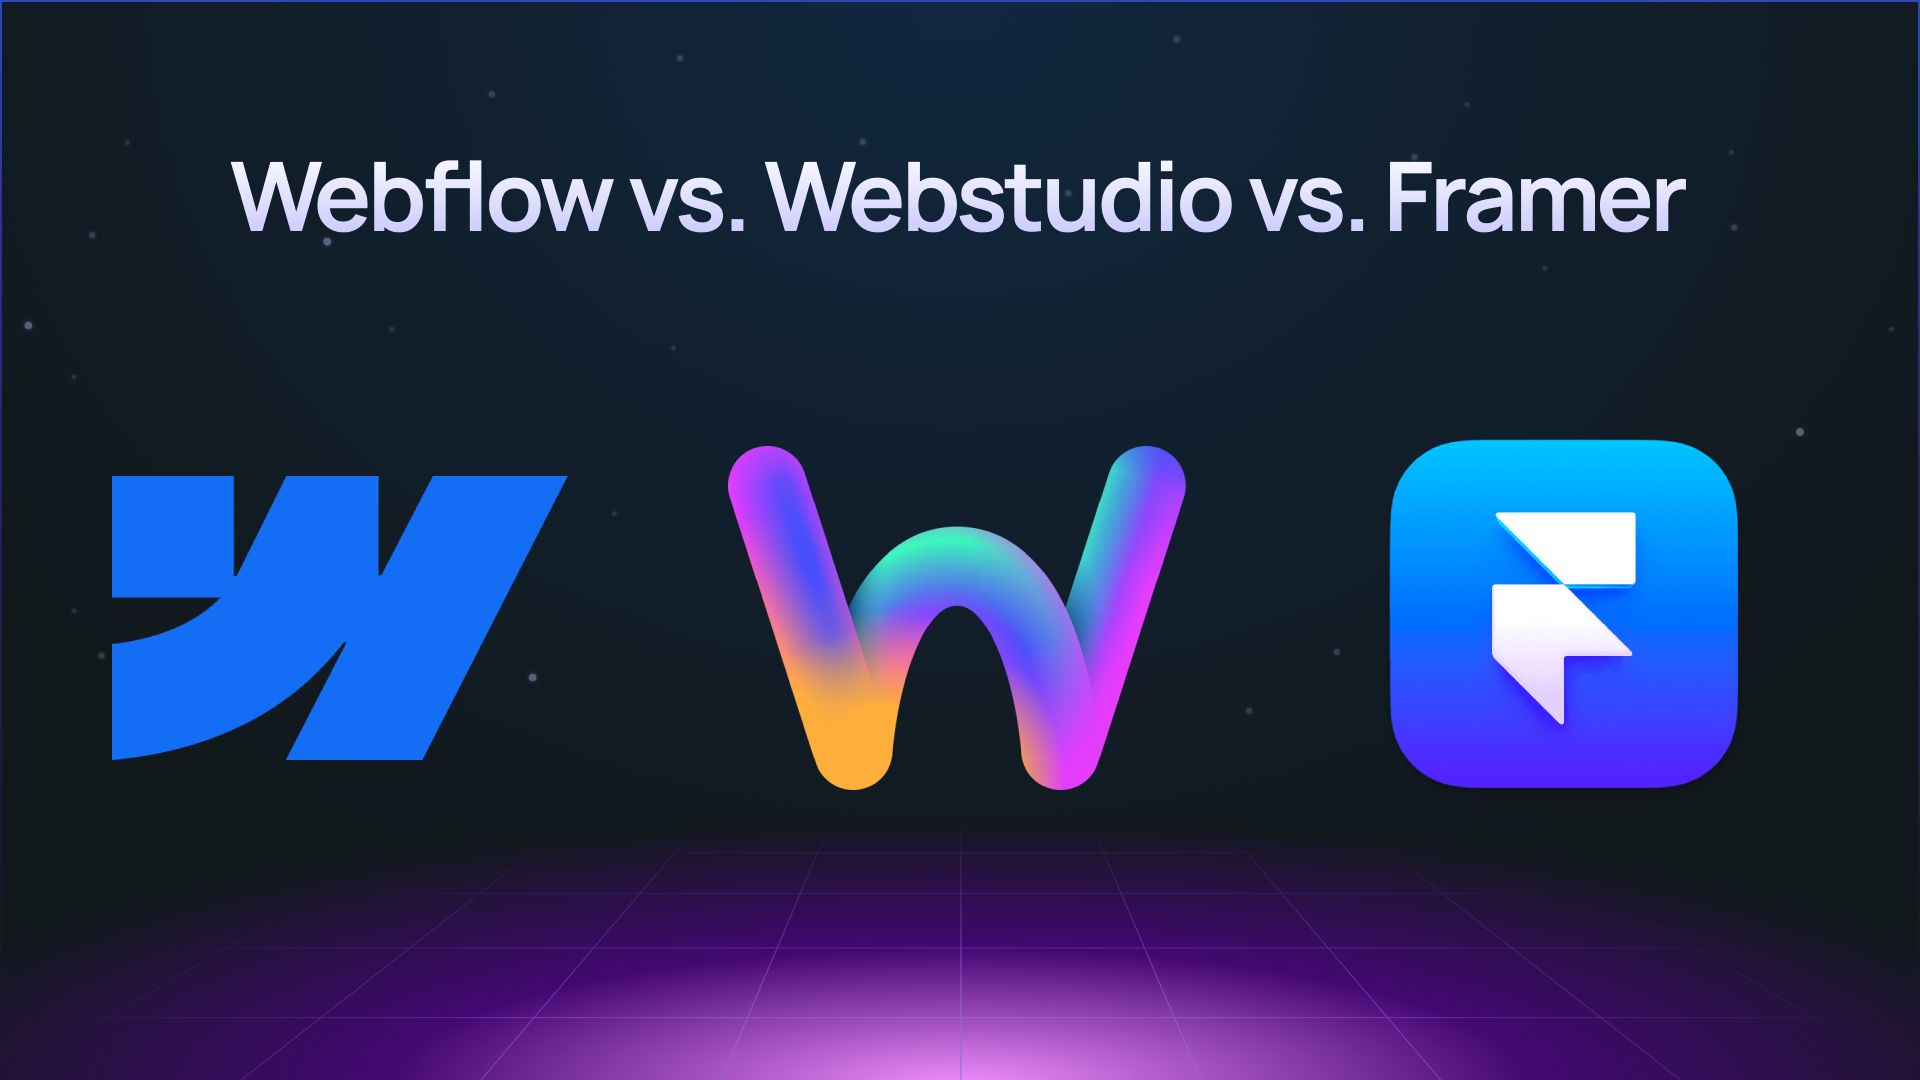 "Webflow vs Webstudio vs Framer" with each of their logos